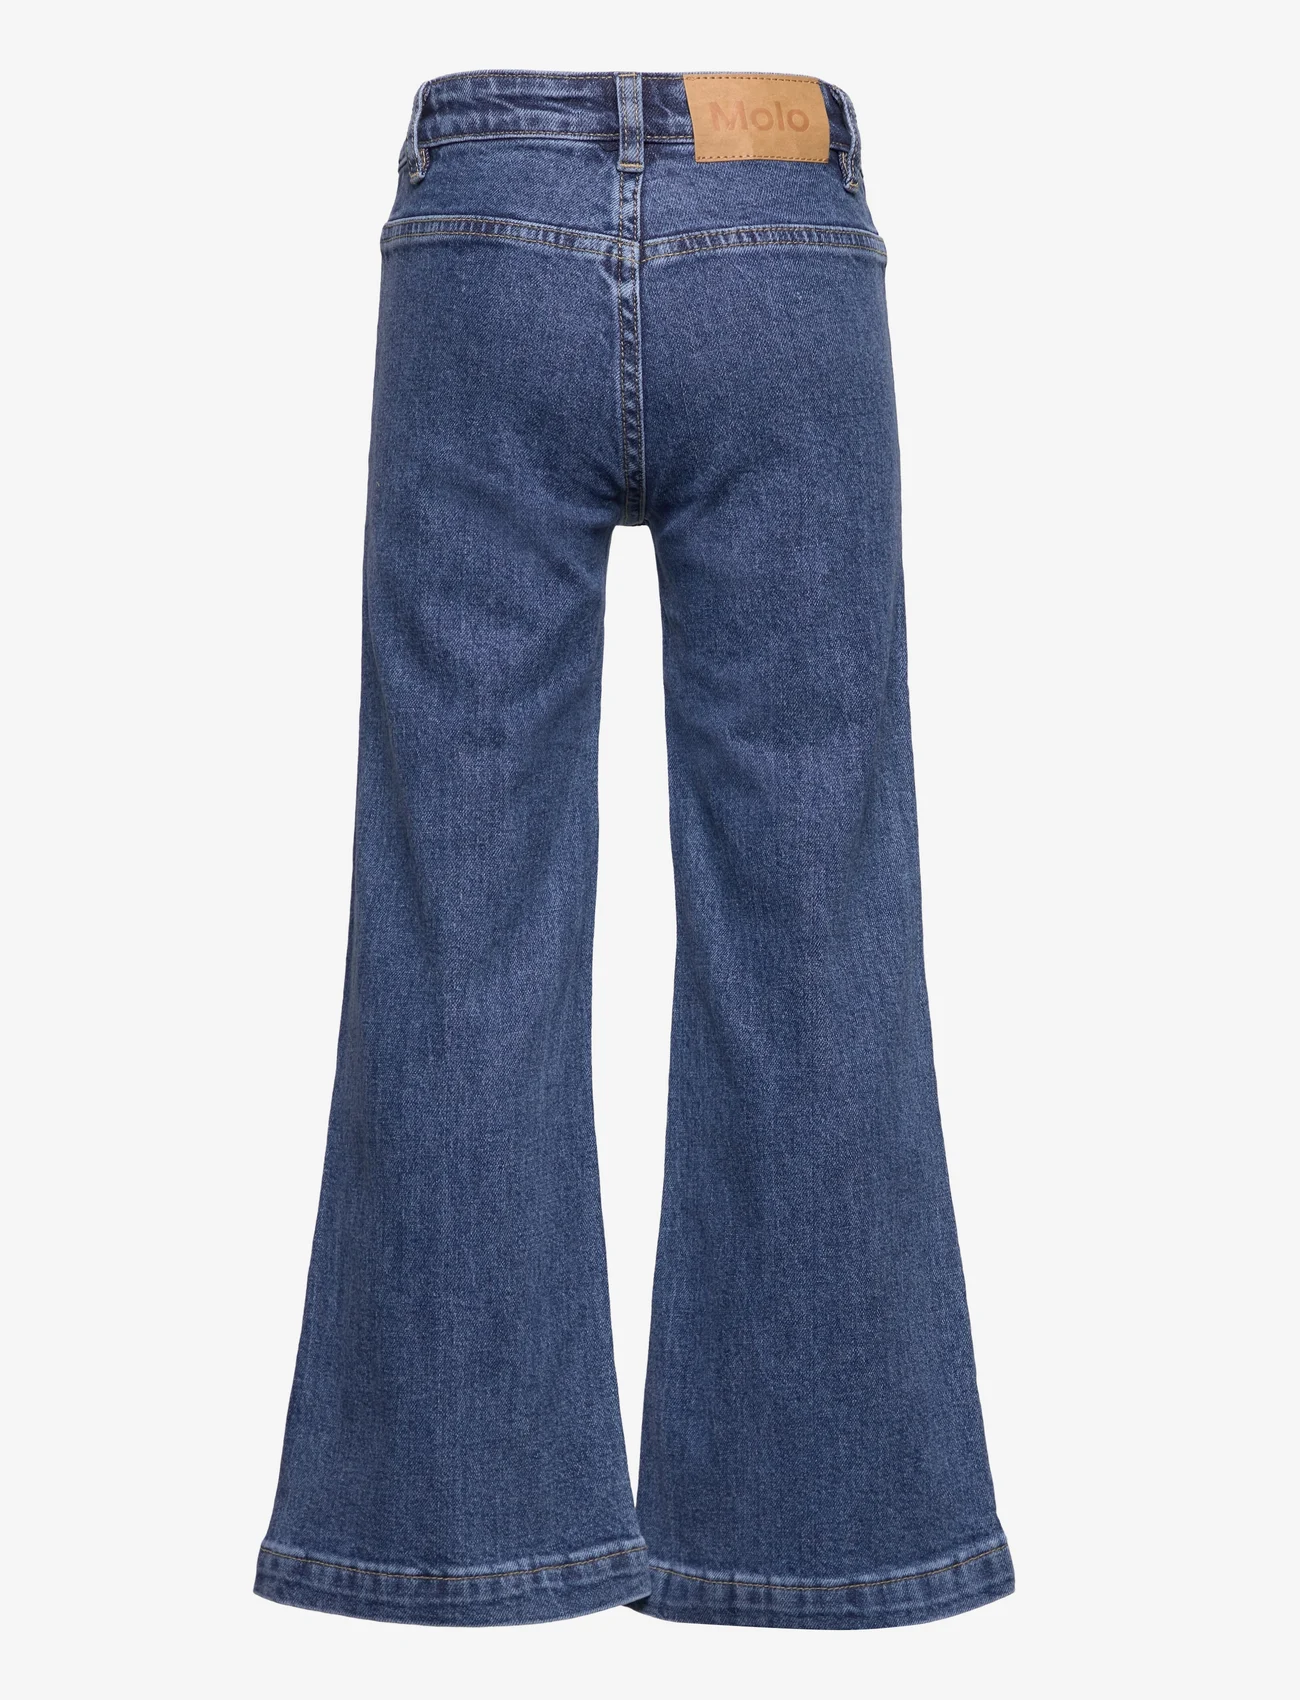 Molo - Adina - bootcut jeans - blue vintage - 1